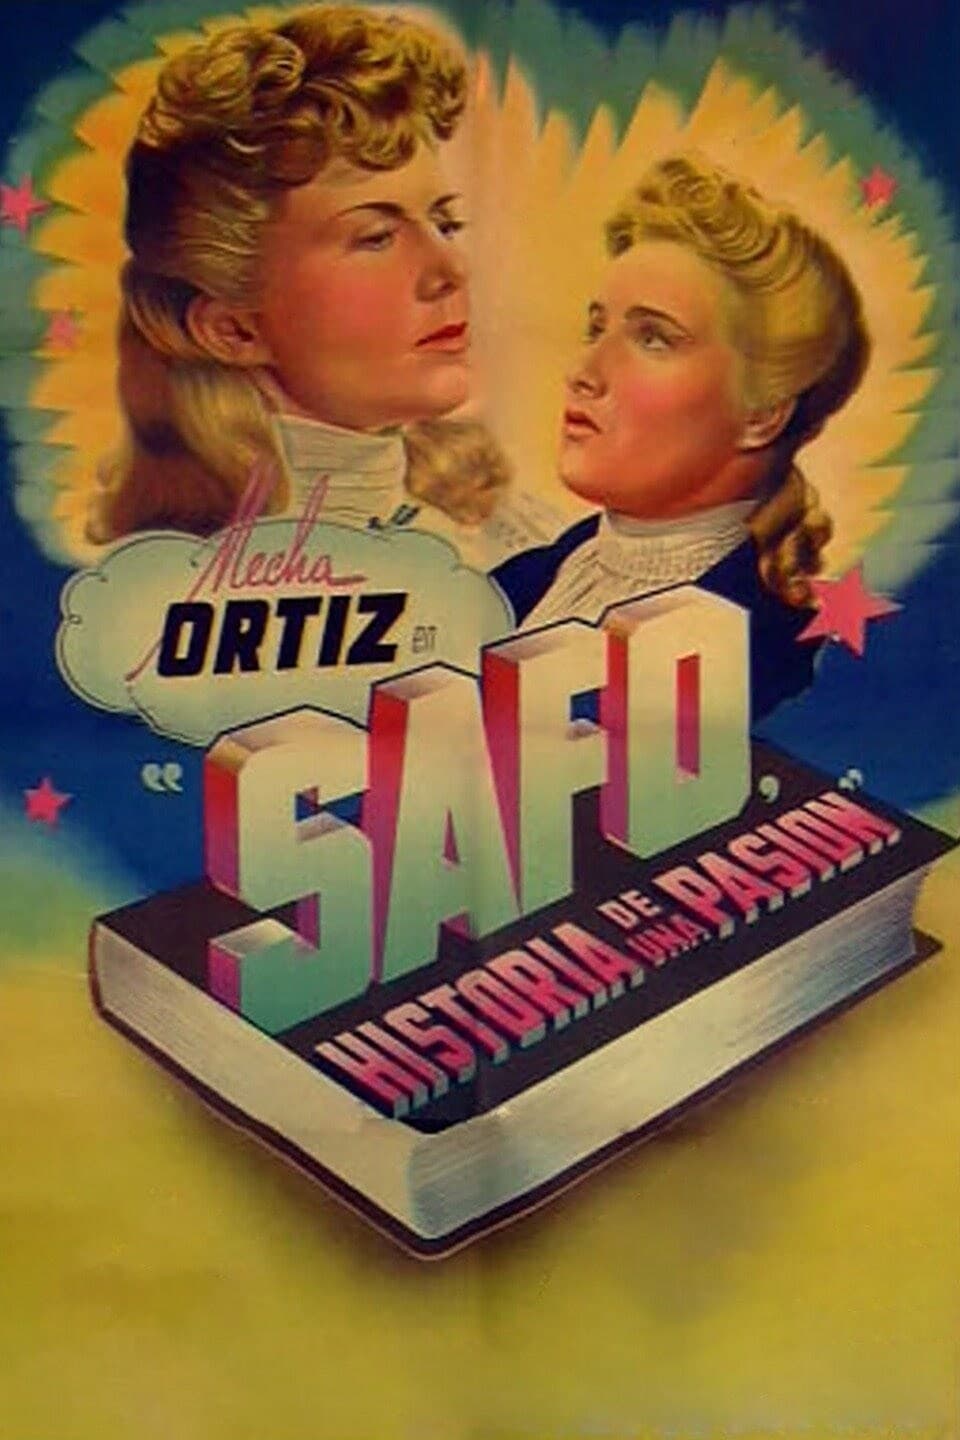 Safo, historia de una pasión (1943)